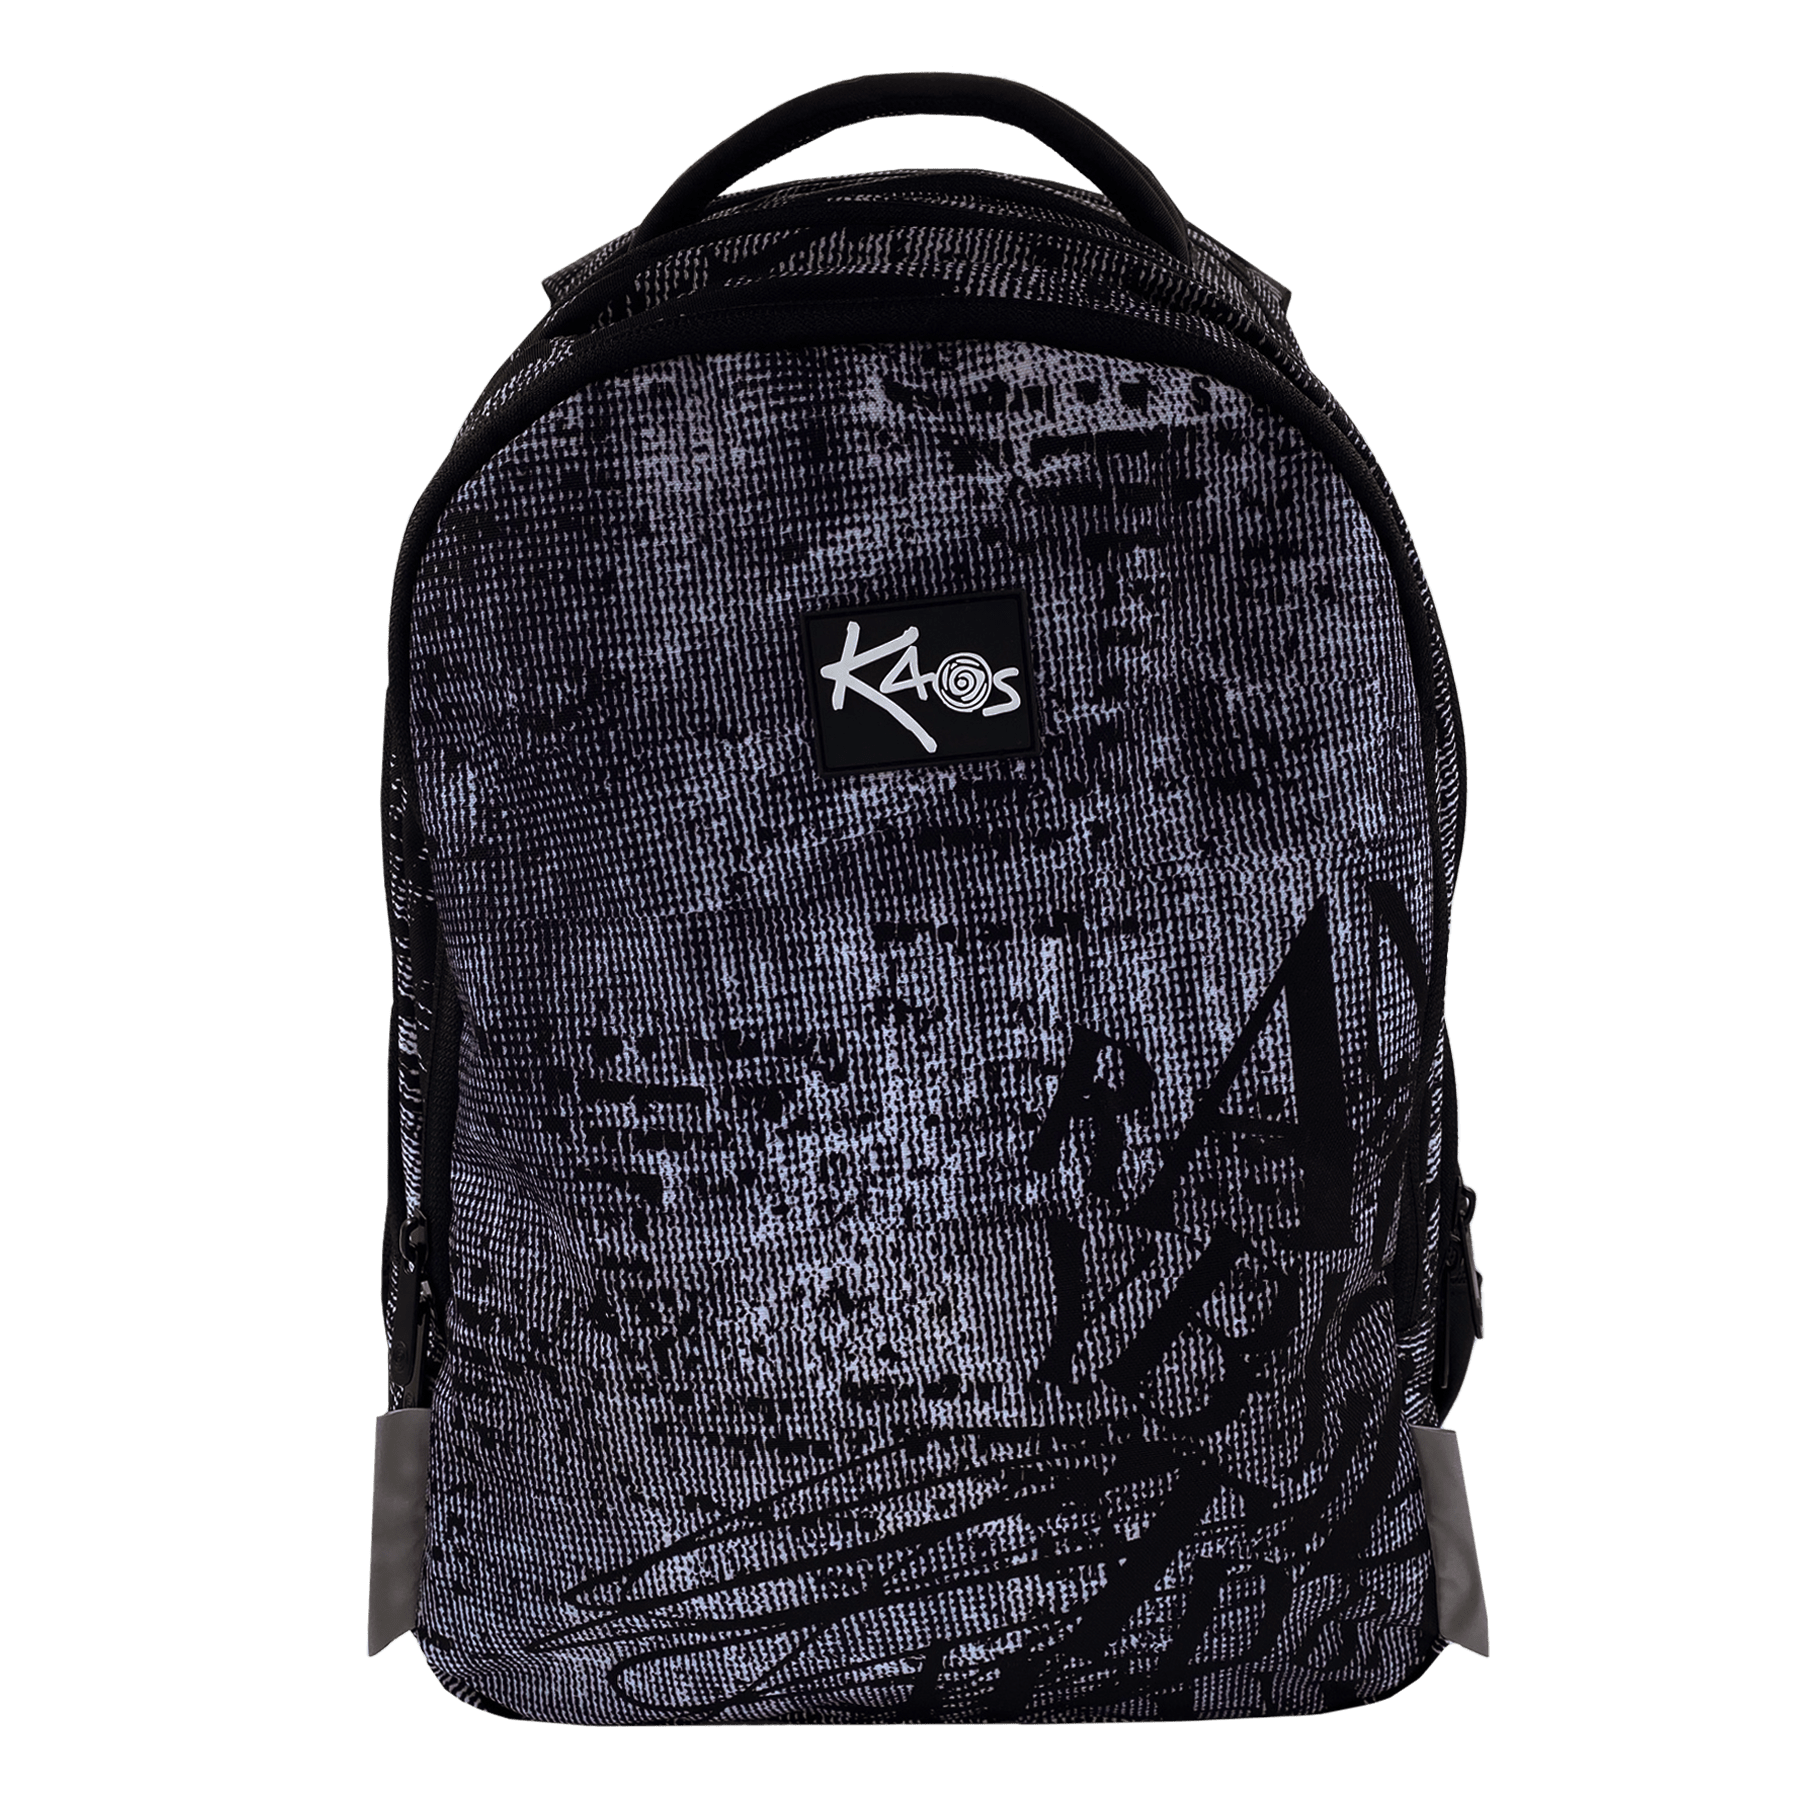 KAOS - Backpack 2-in-1 (36L) - Fiction (951764) - Leker